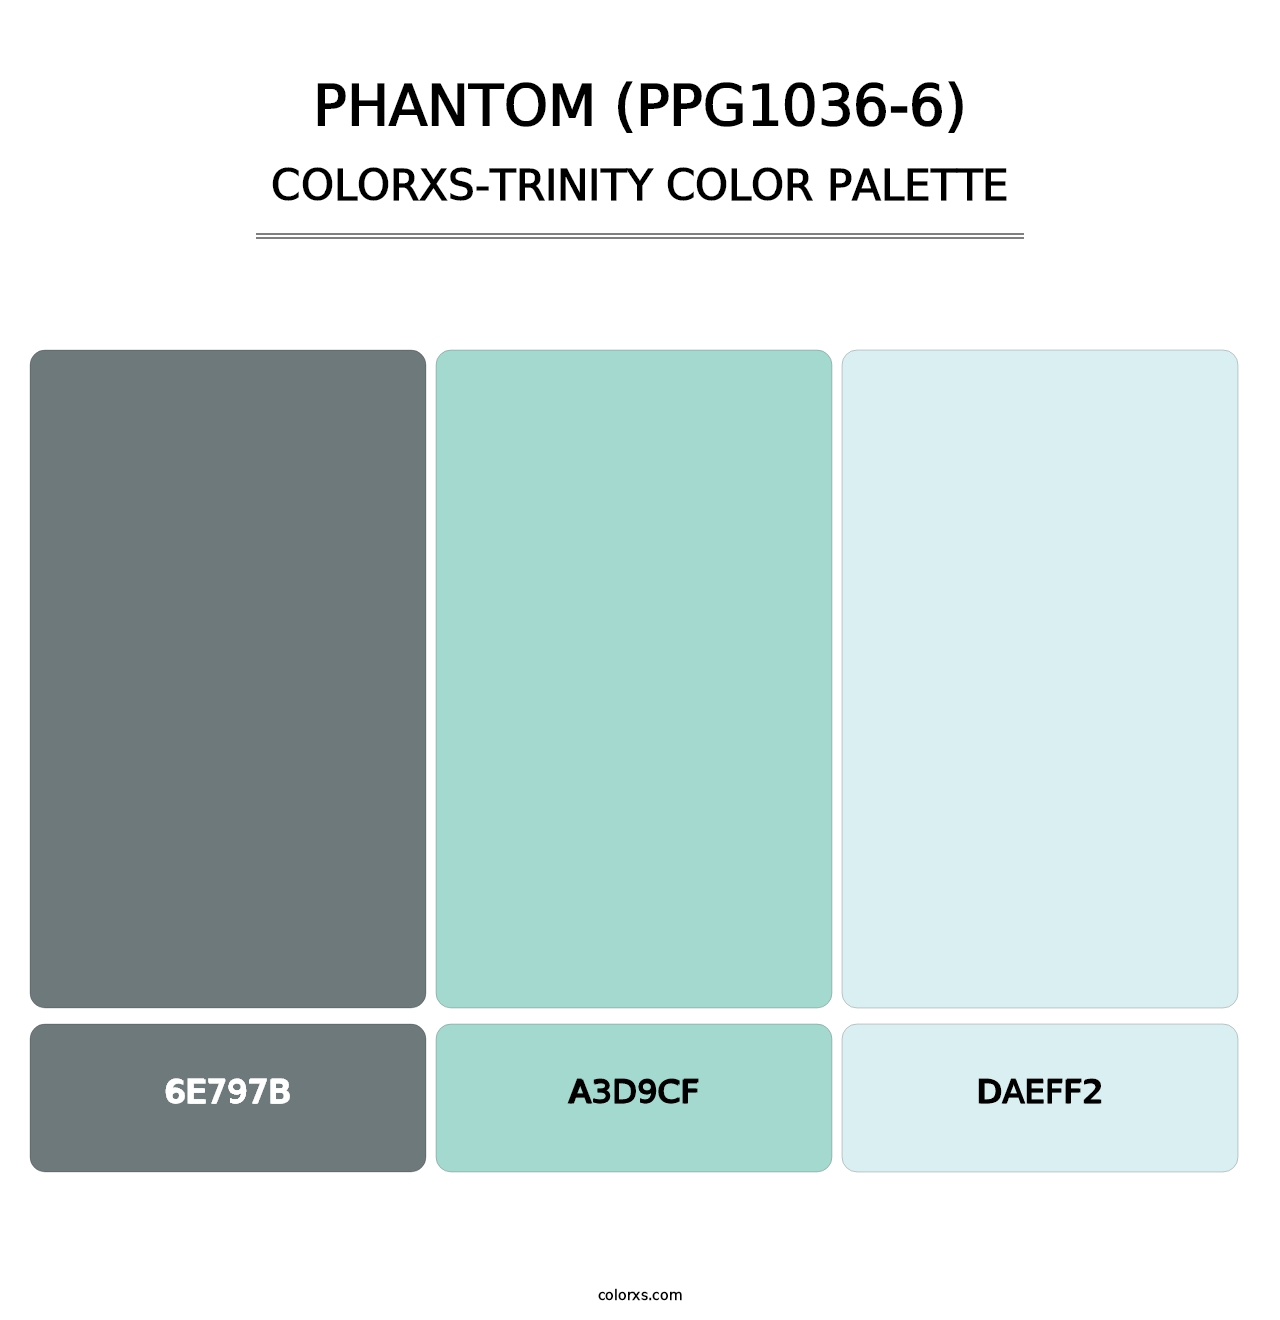 Phantom (PPG1036-6) - Colorxs Trinity Palette